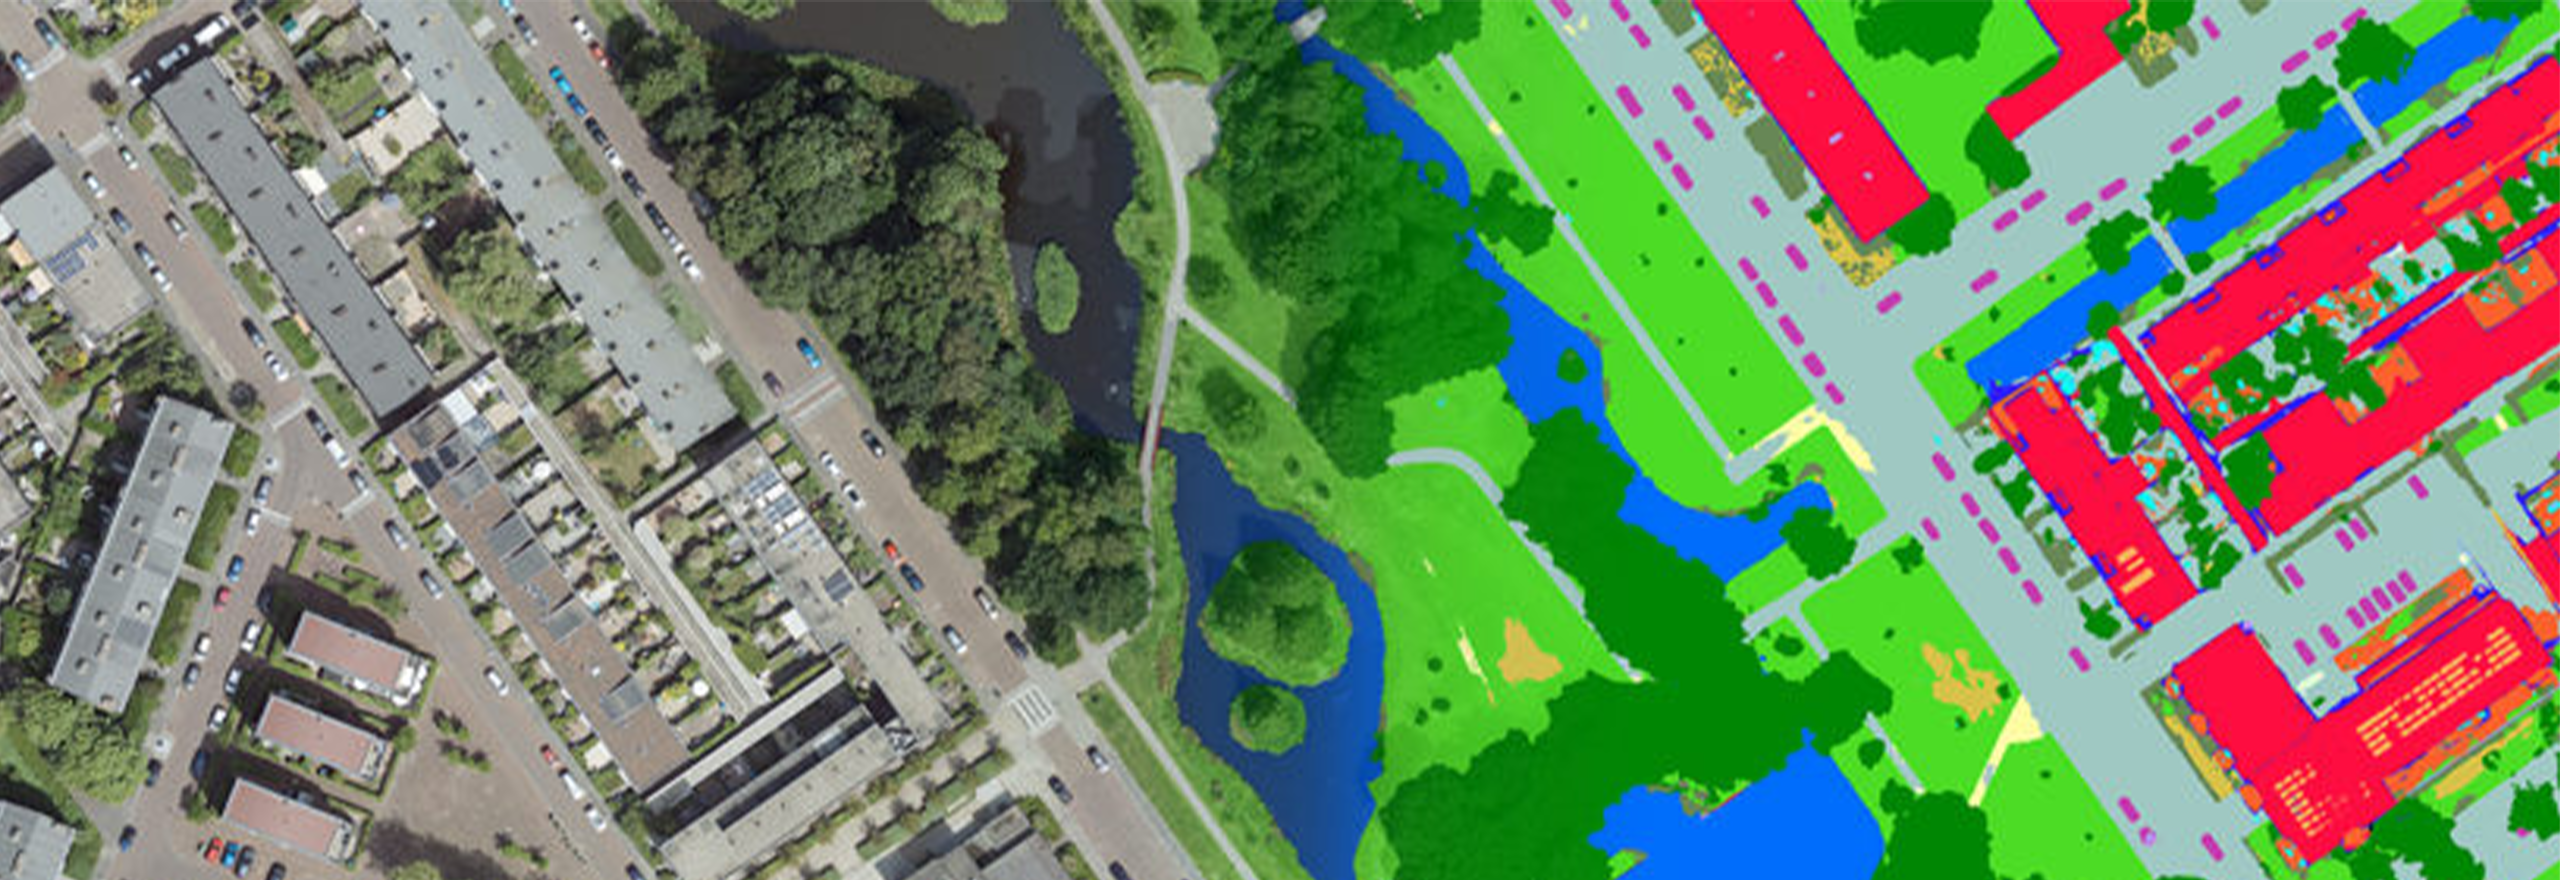 Imagerie aérienne superposée avec plan de couverture du sol provenant de l’intelligence artificielle 